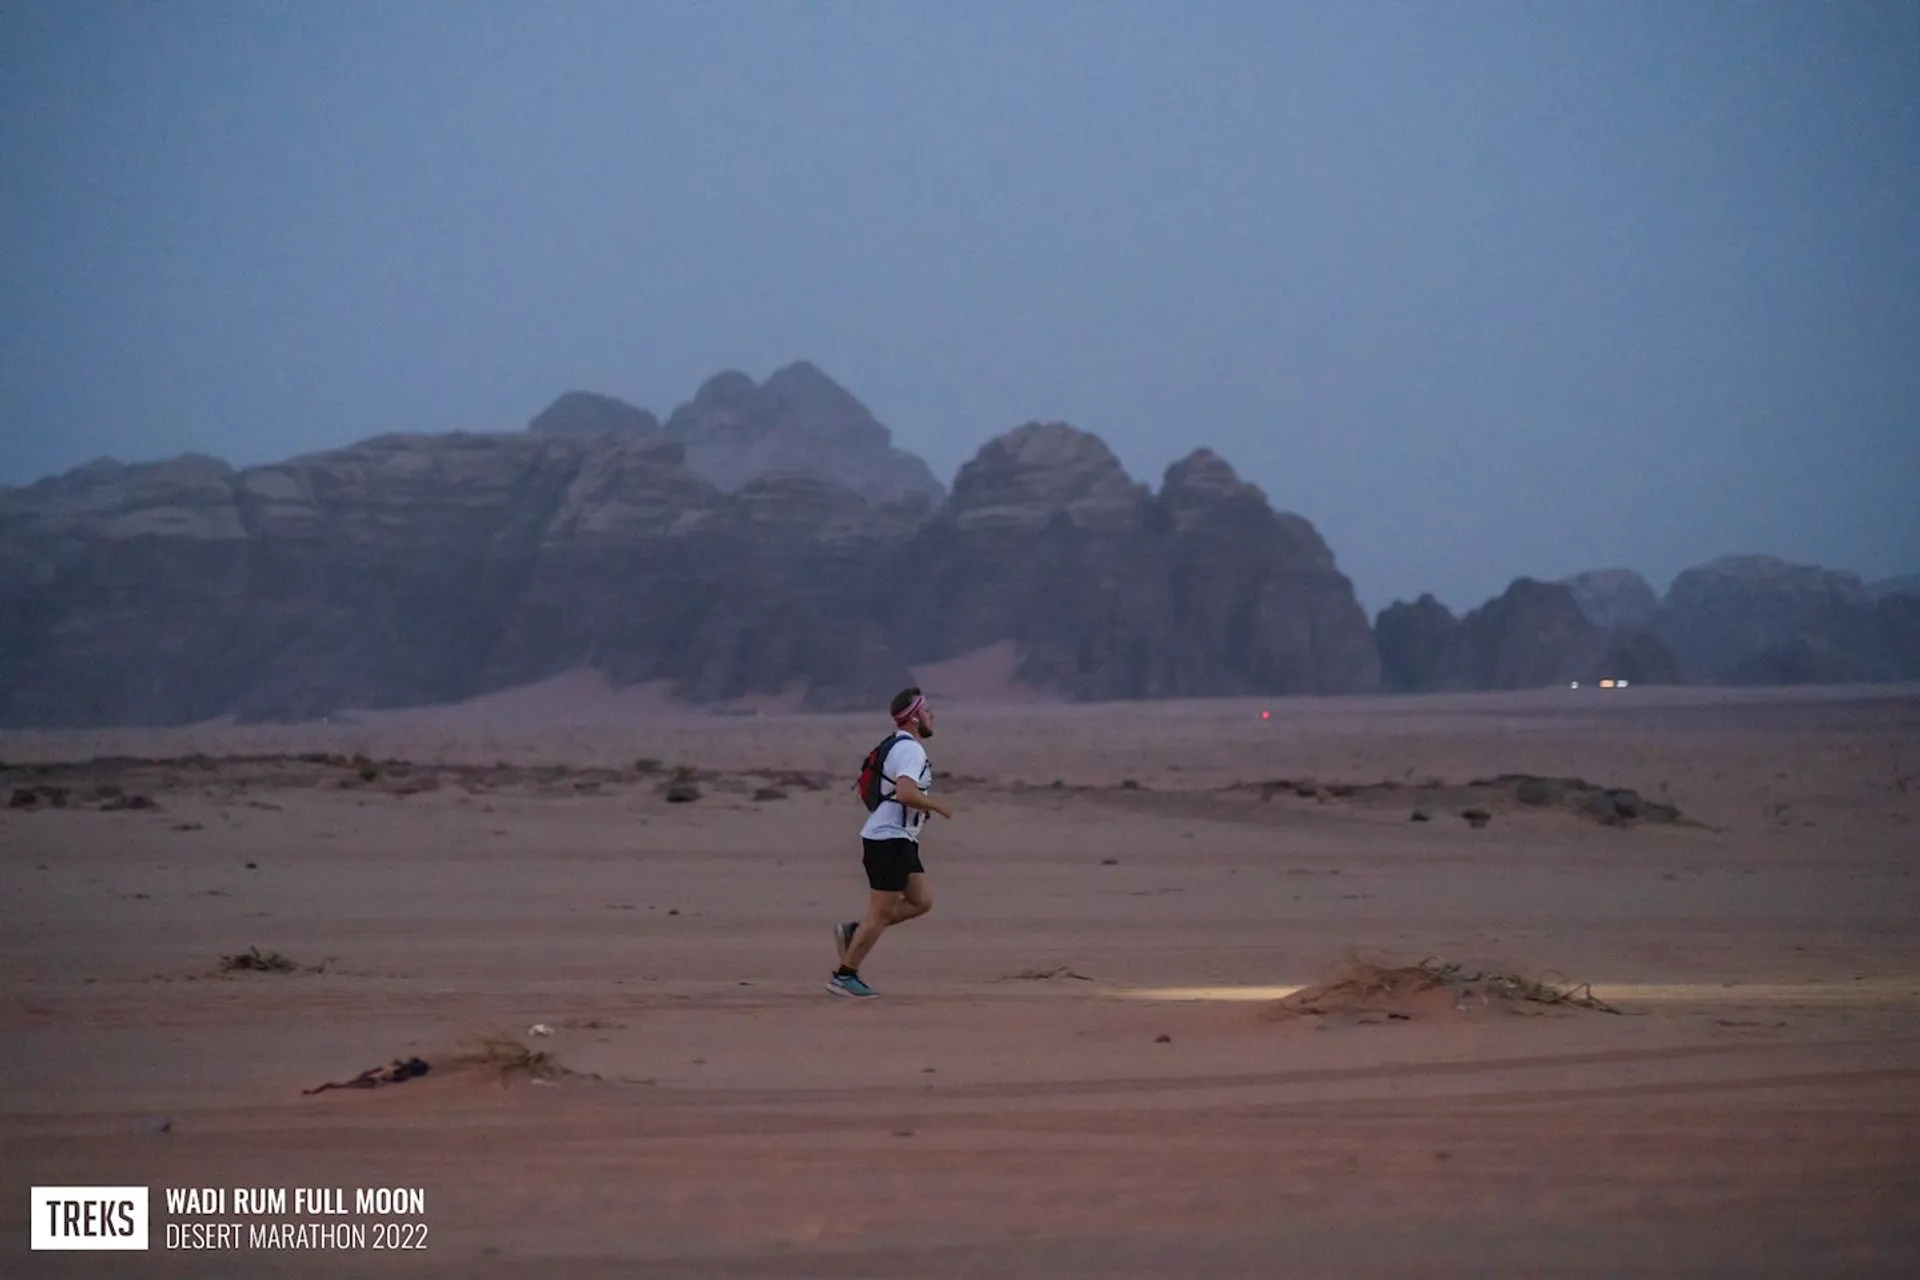 Full Moon Desert Marathon